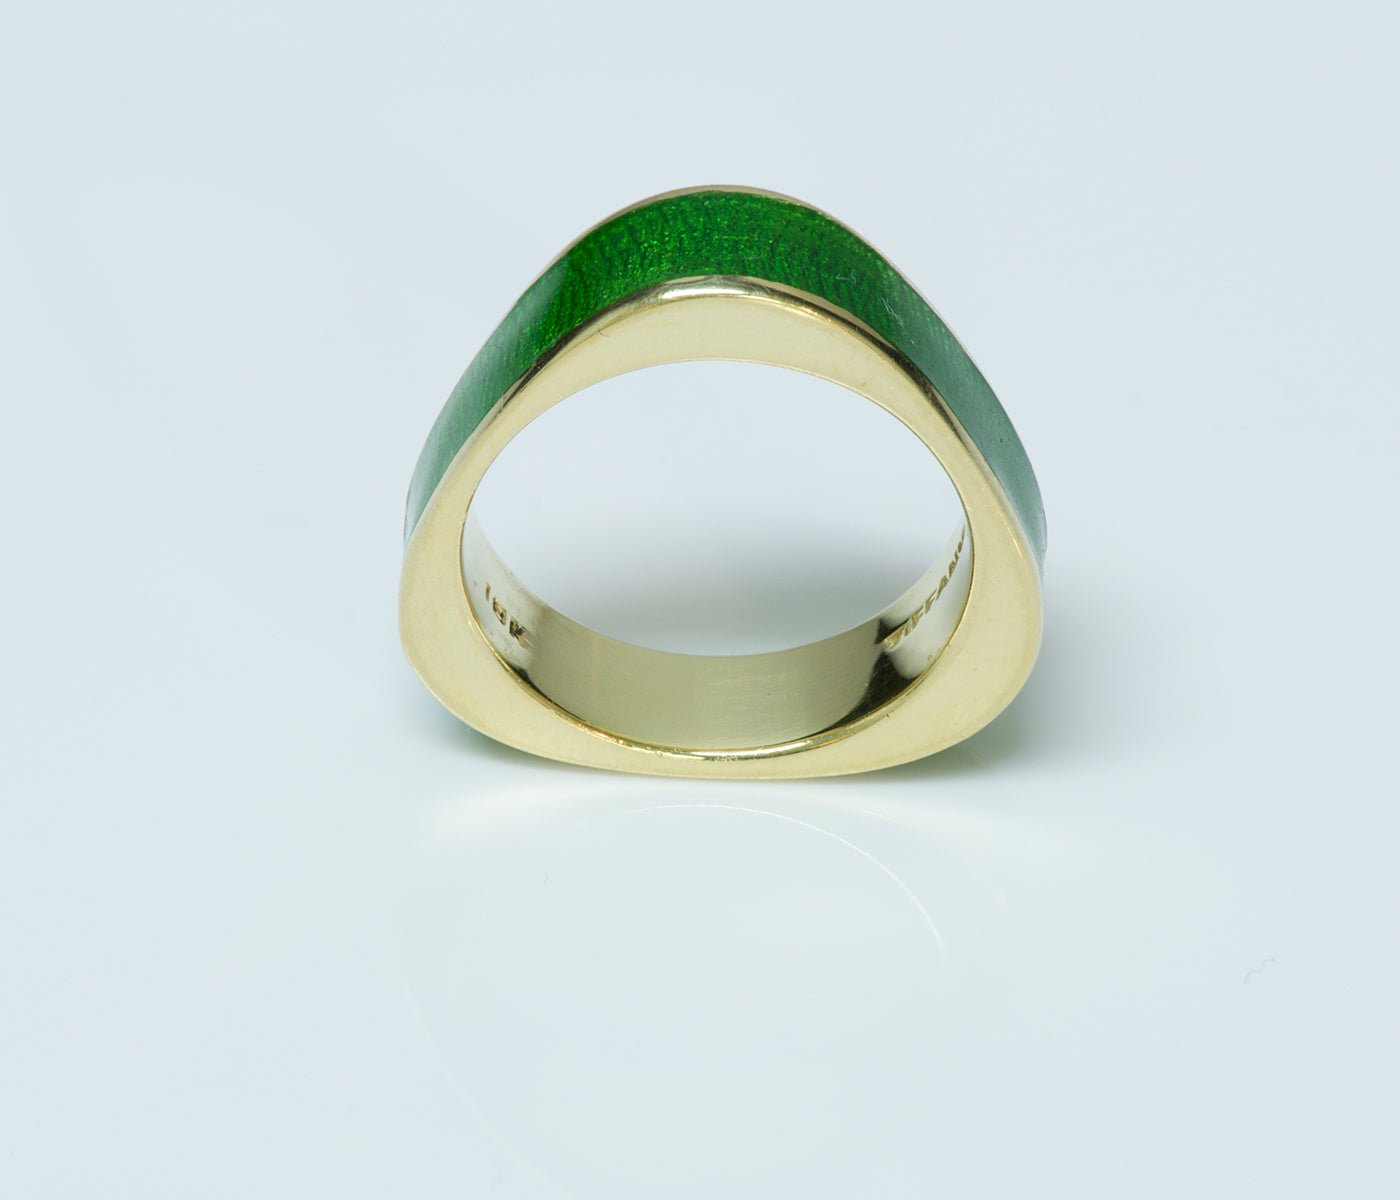 Tiffany & Co. 18K Yellow Gold Enamel Ring